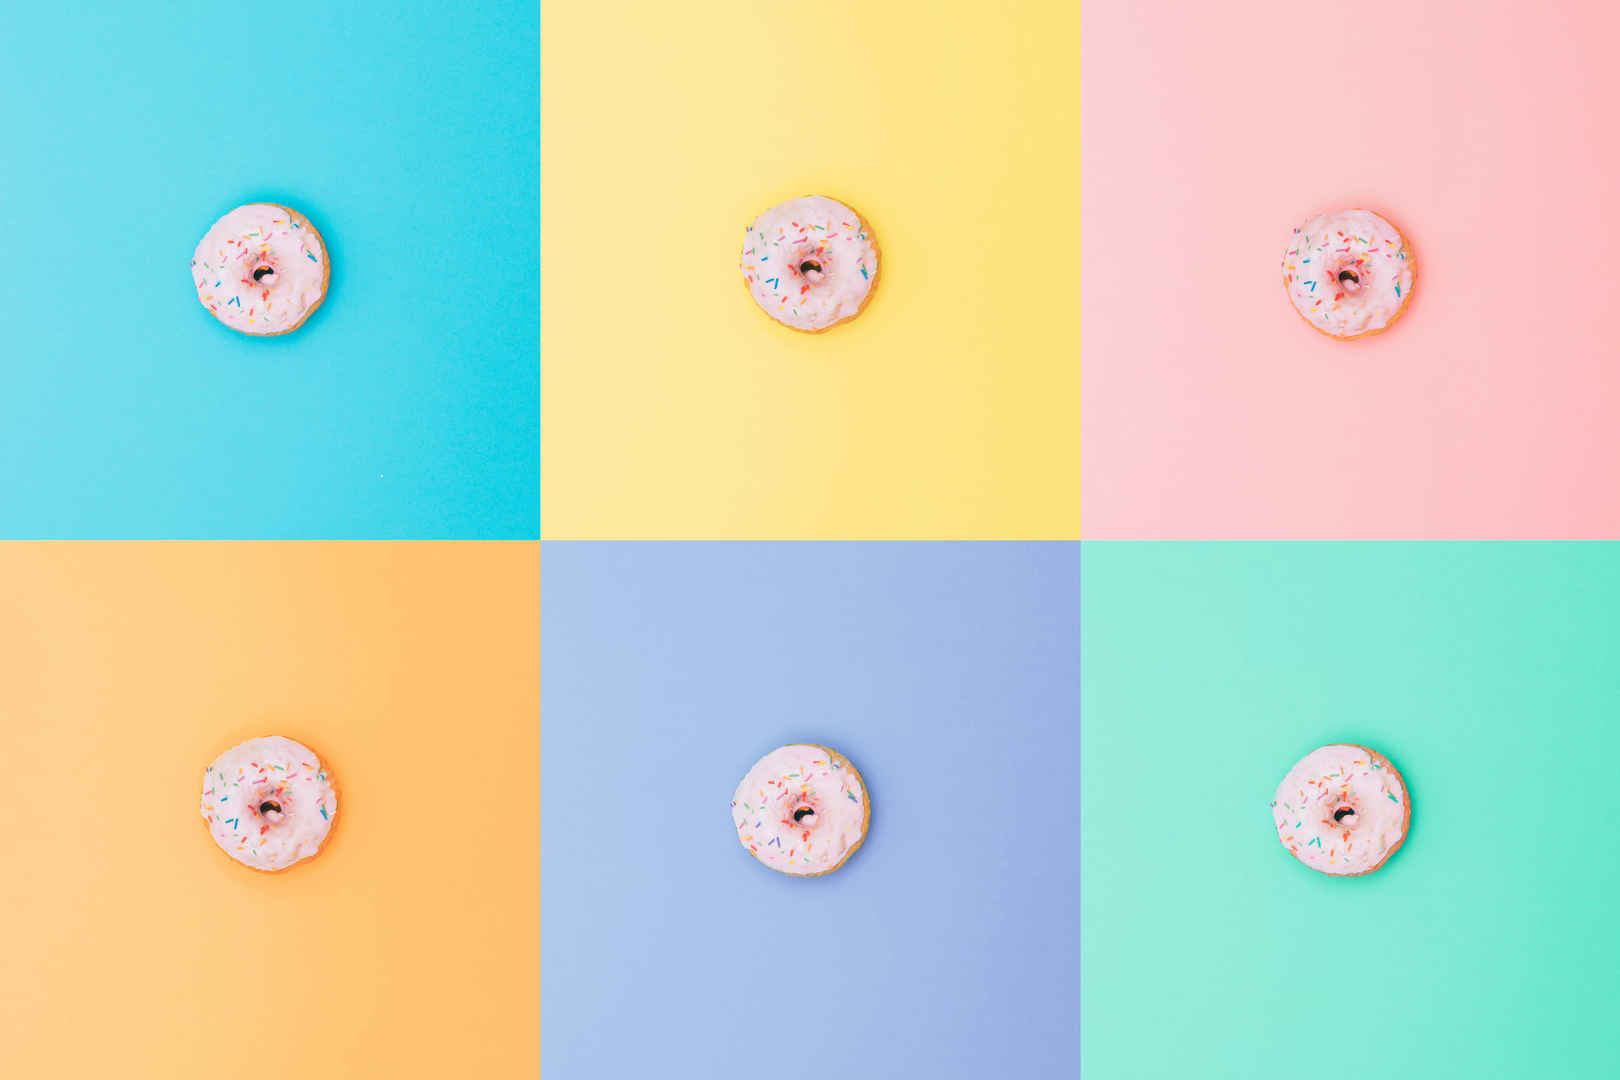 极简主义风格粉色甜甜圈壁纸